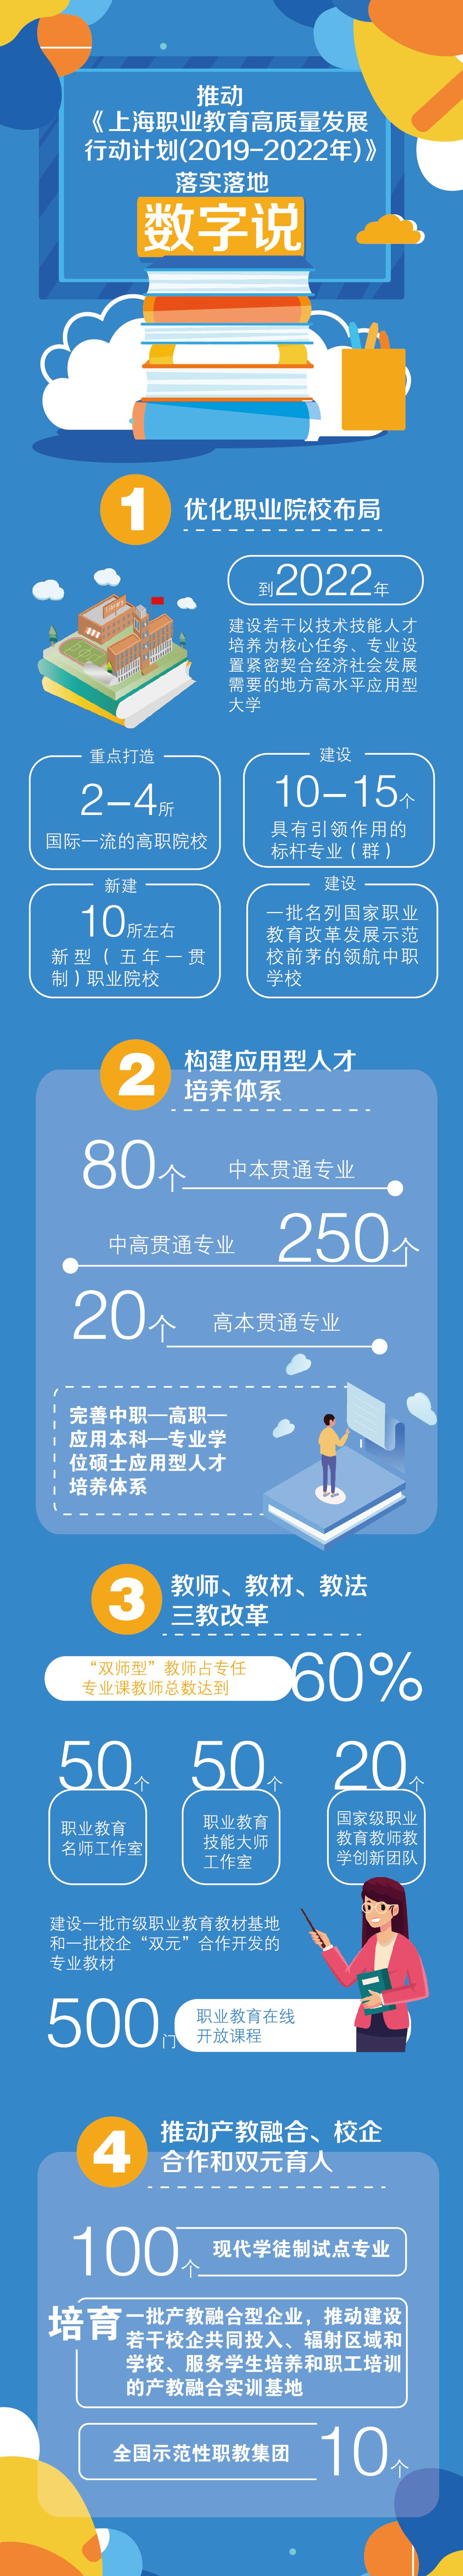 2.图解 上海职教高质量发展行动计划（2019-2022）.jpg